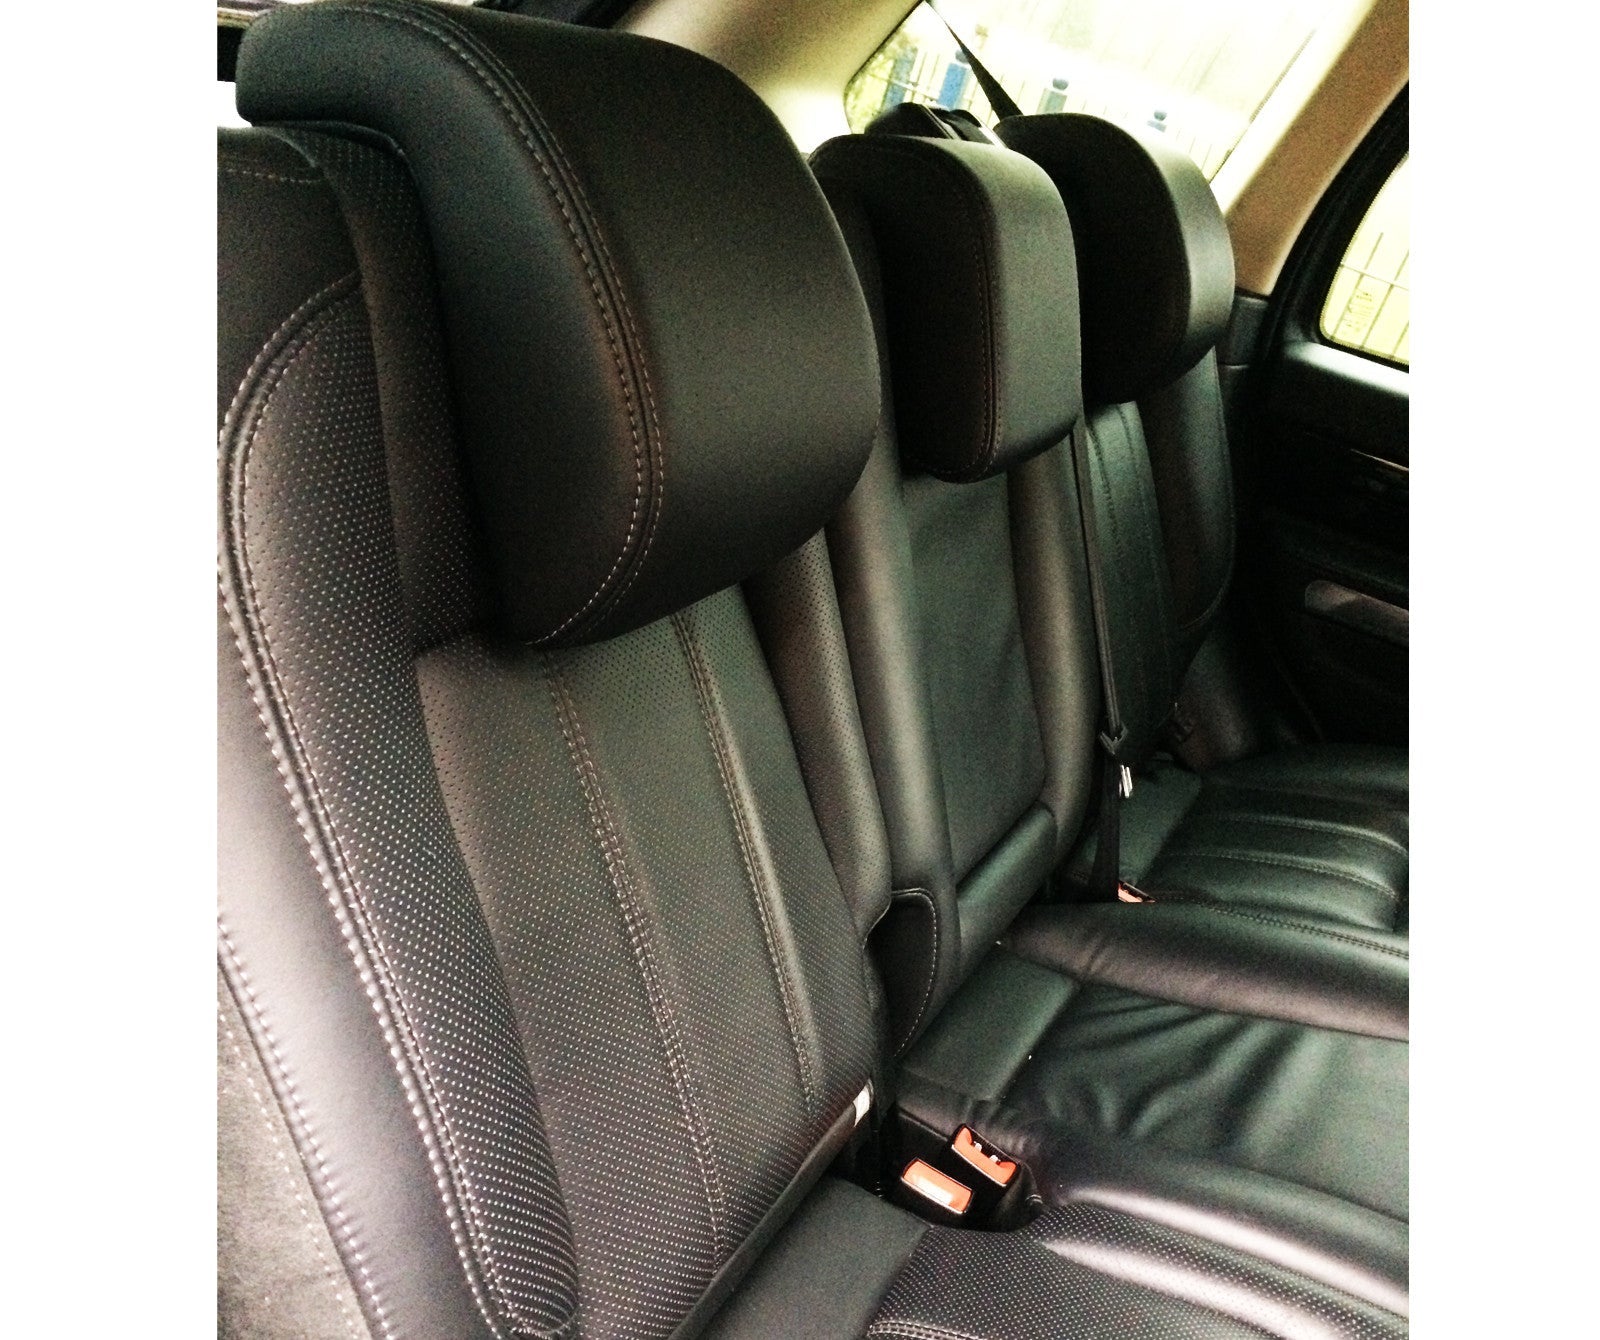 Range Rover Sport HSE Leather Seats & Door cards